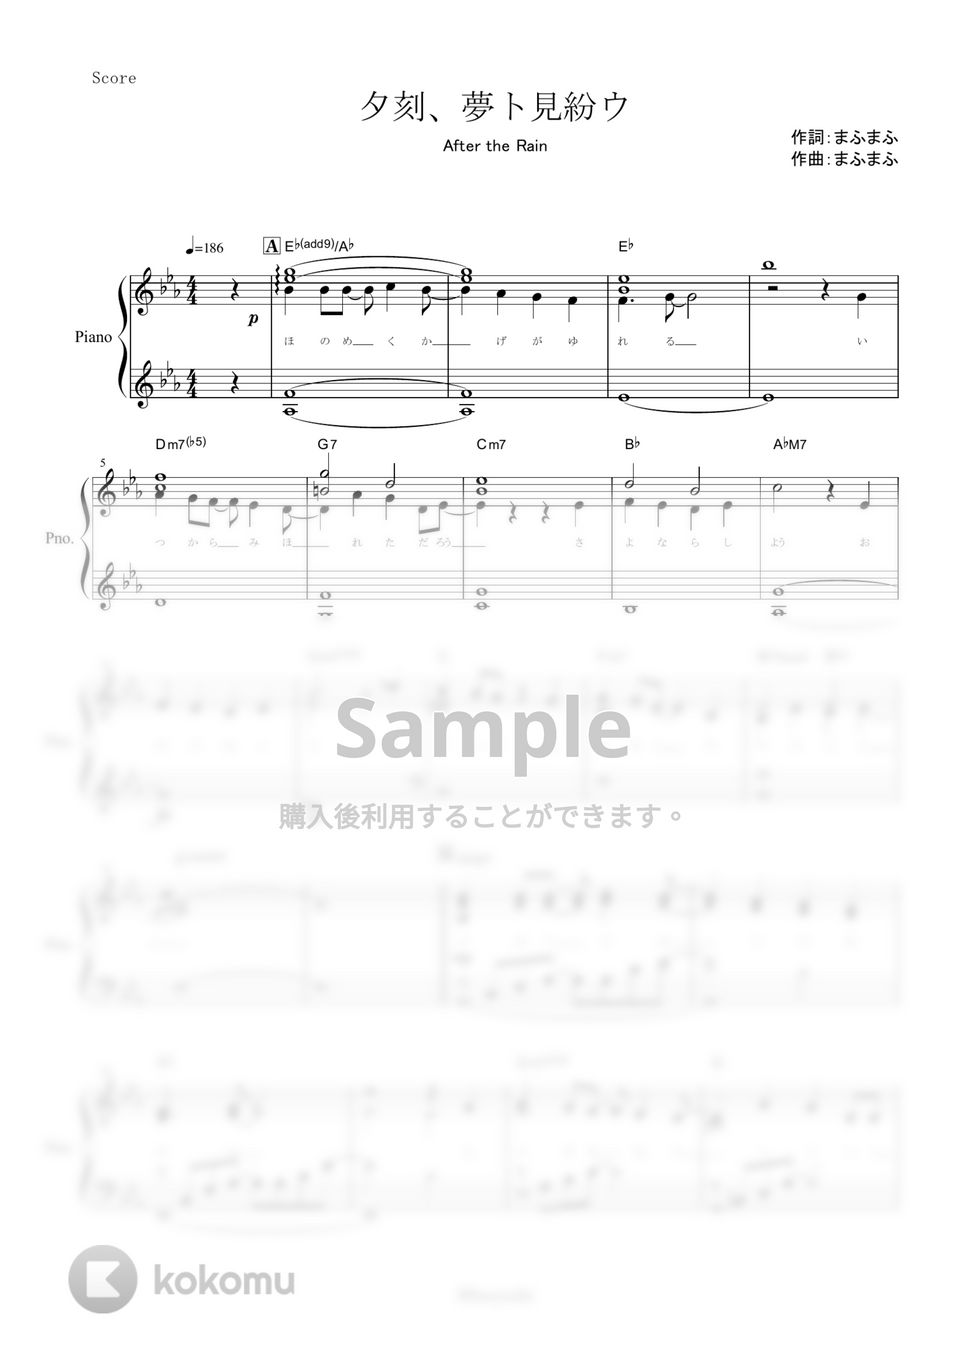 After the Rain - 夕刻、夢ト見紛ウ (ピアノ楽譜/全9ページ) by yoshi